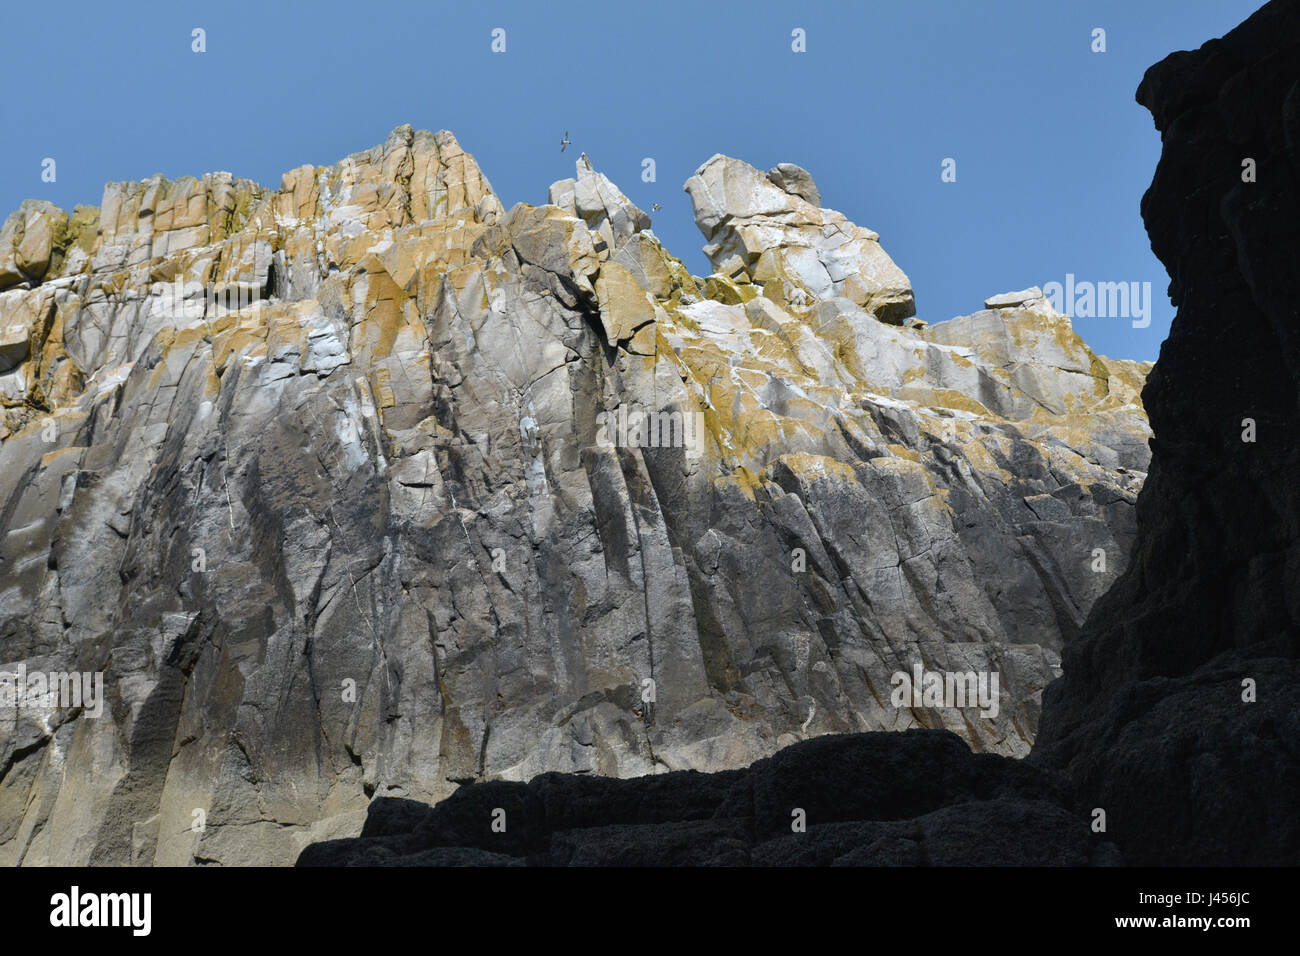 Les roches de granit au large des îles Scilly, Royaume-Uni Banque D'Images